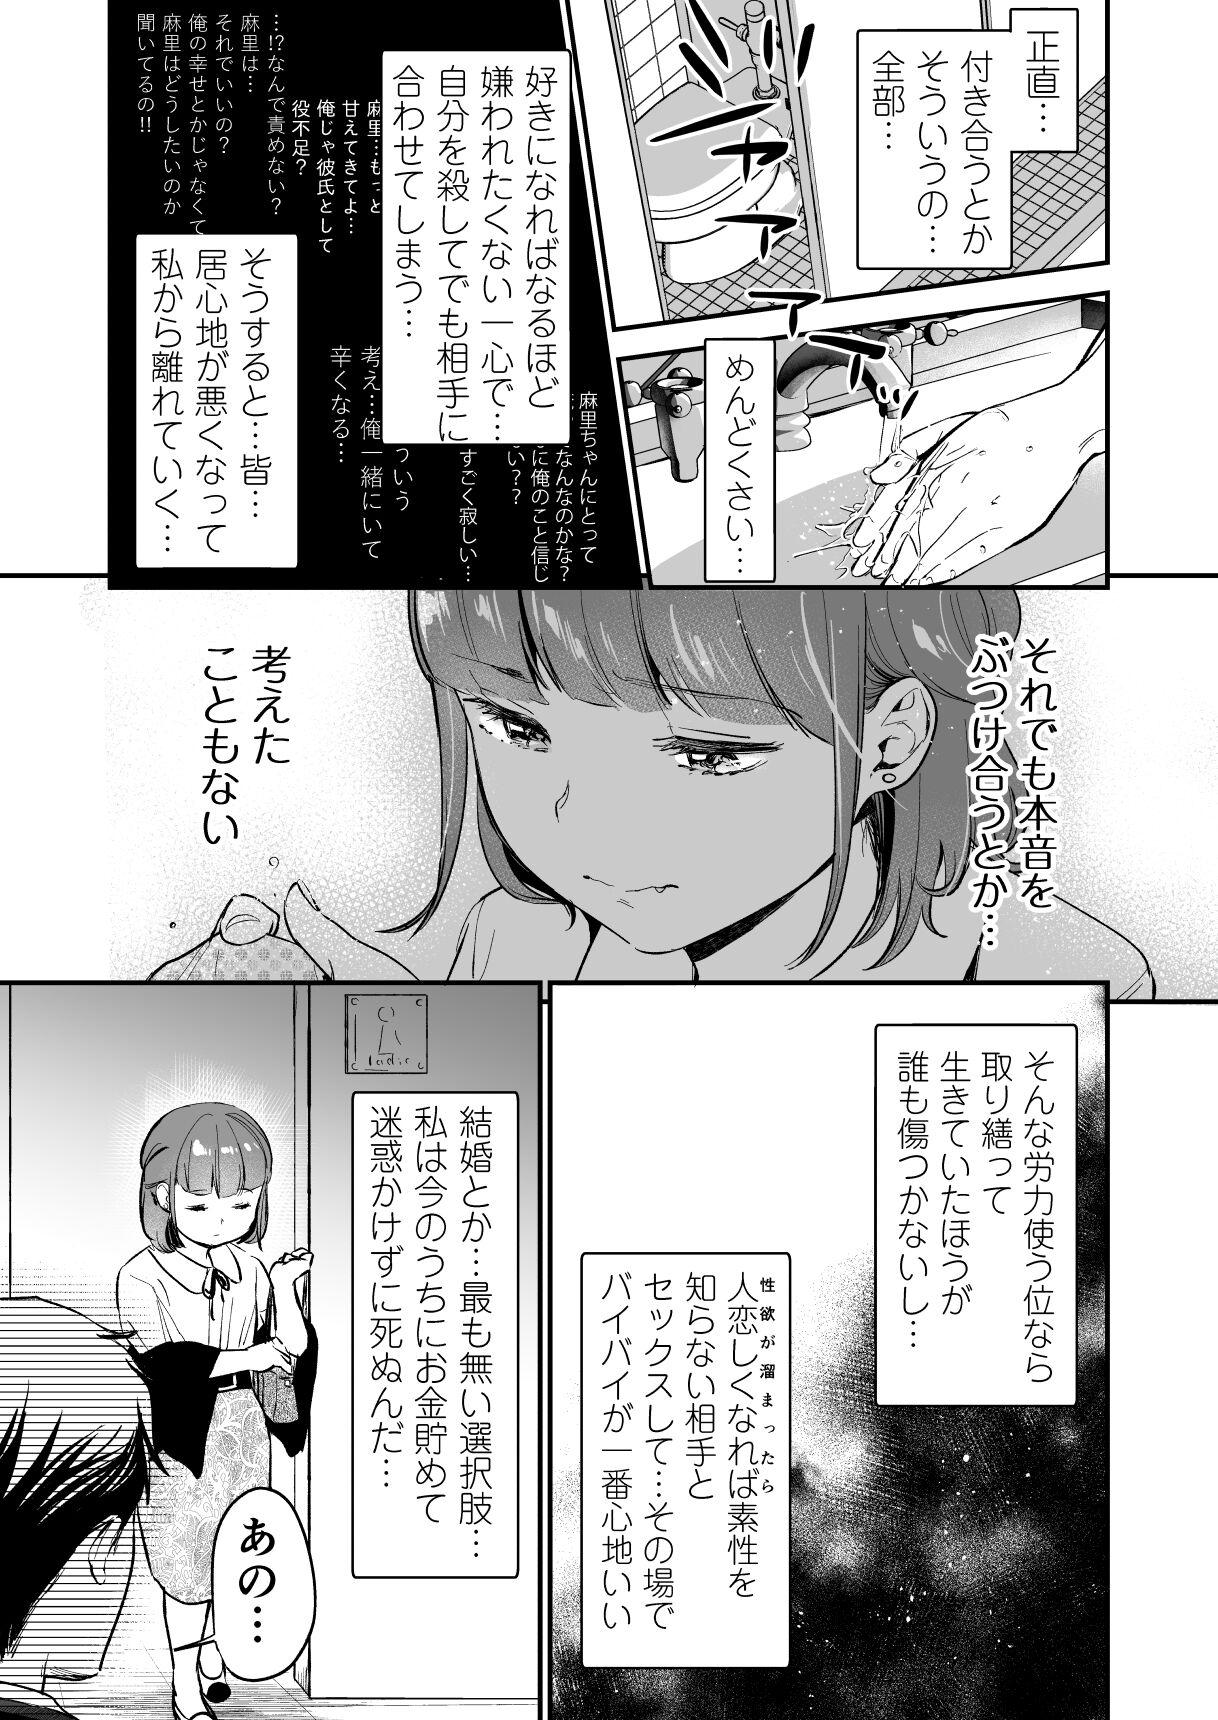 Street Chīsana nikushoku-jū wa ōkina chi ● po de haramita gatte iru - Original Massage Creep - Page 5